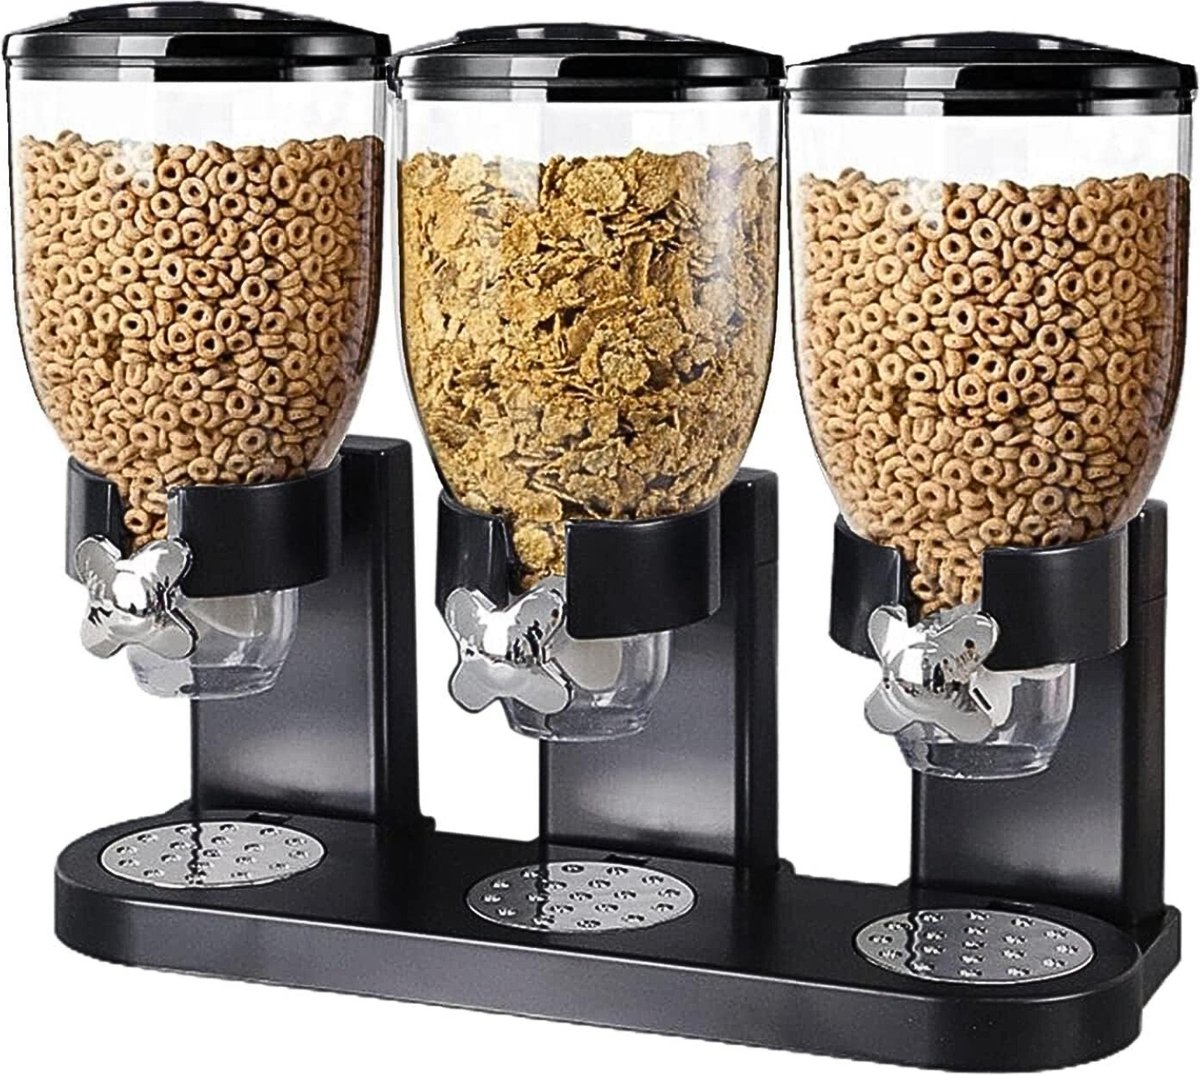 Cornflakes Dispenser - Rijst Dispenser - Food Dispenser - Ontbijtgranen Voorraaddoos - Rijst Container - Cereal & Muesli Dispenser - Cornflakes & Ontbijtgranen Bewaardoos - 3 Dispensers - AllYourNeeds.